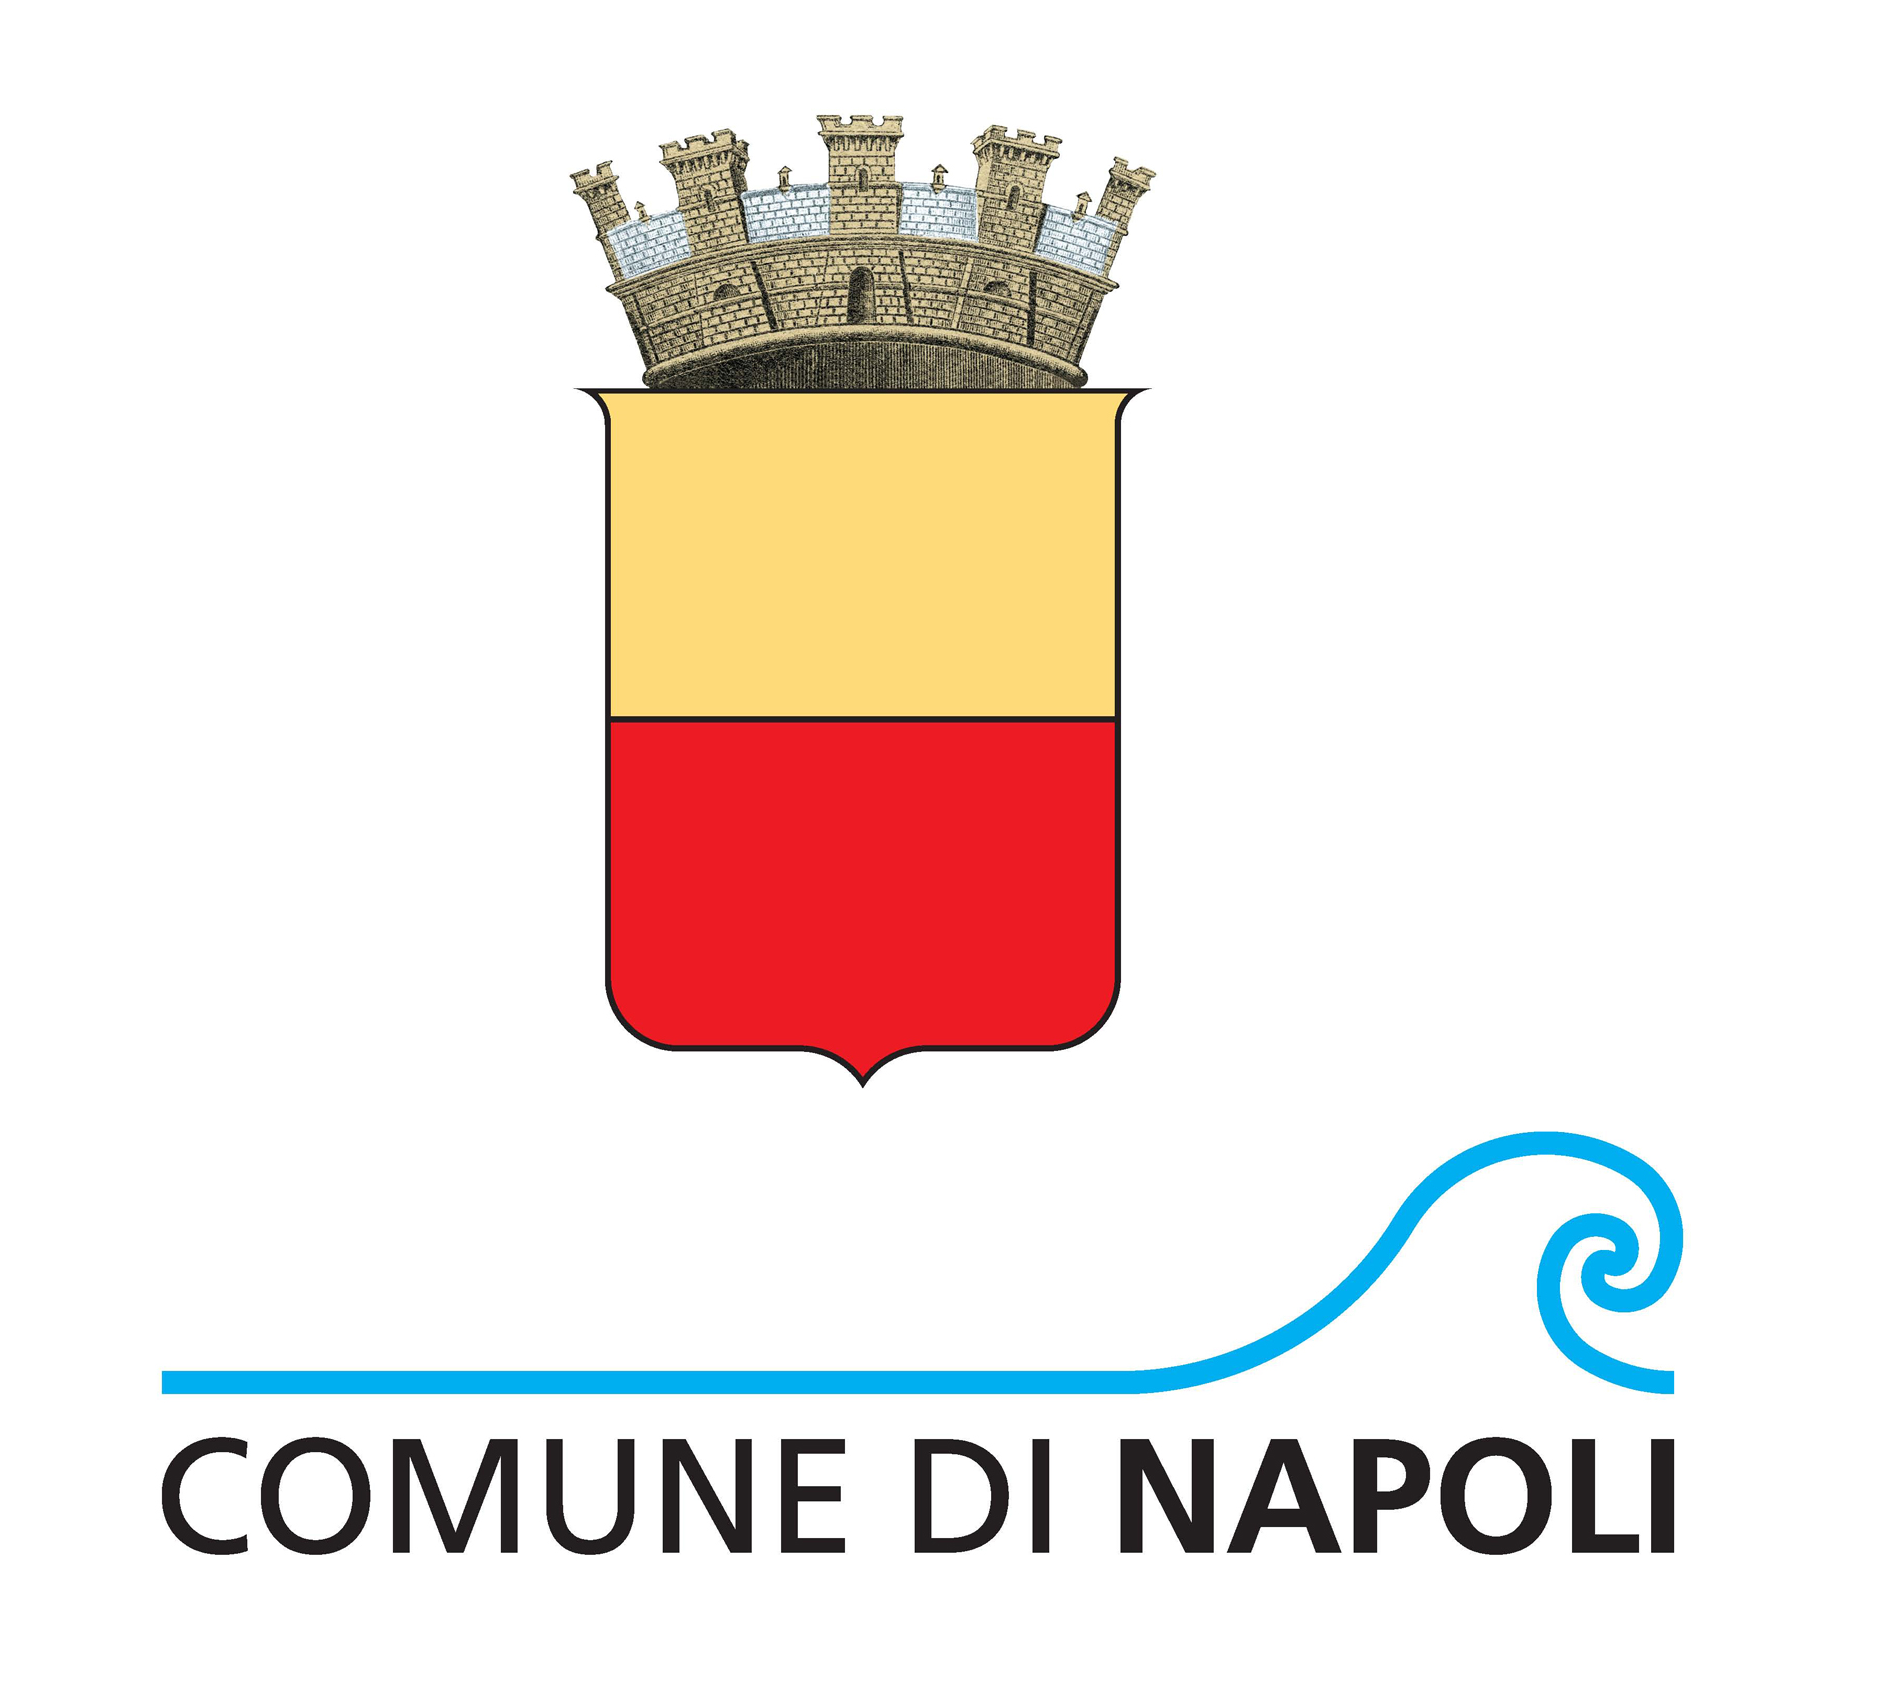 Comune di Napoli: Dismissione Patrimonio Immobiliare 2019-2020